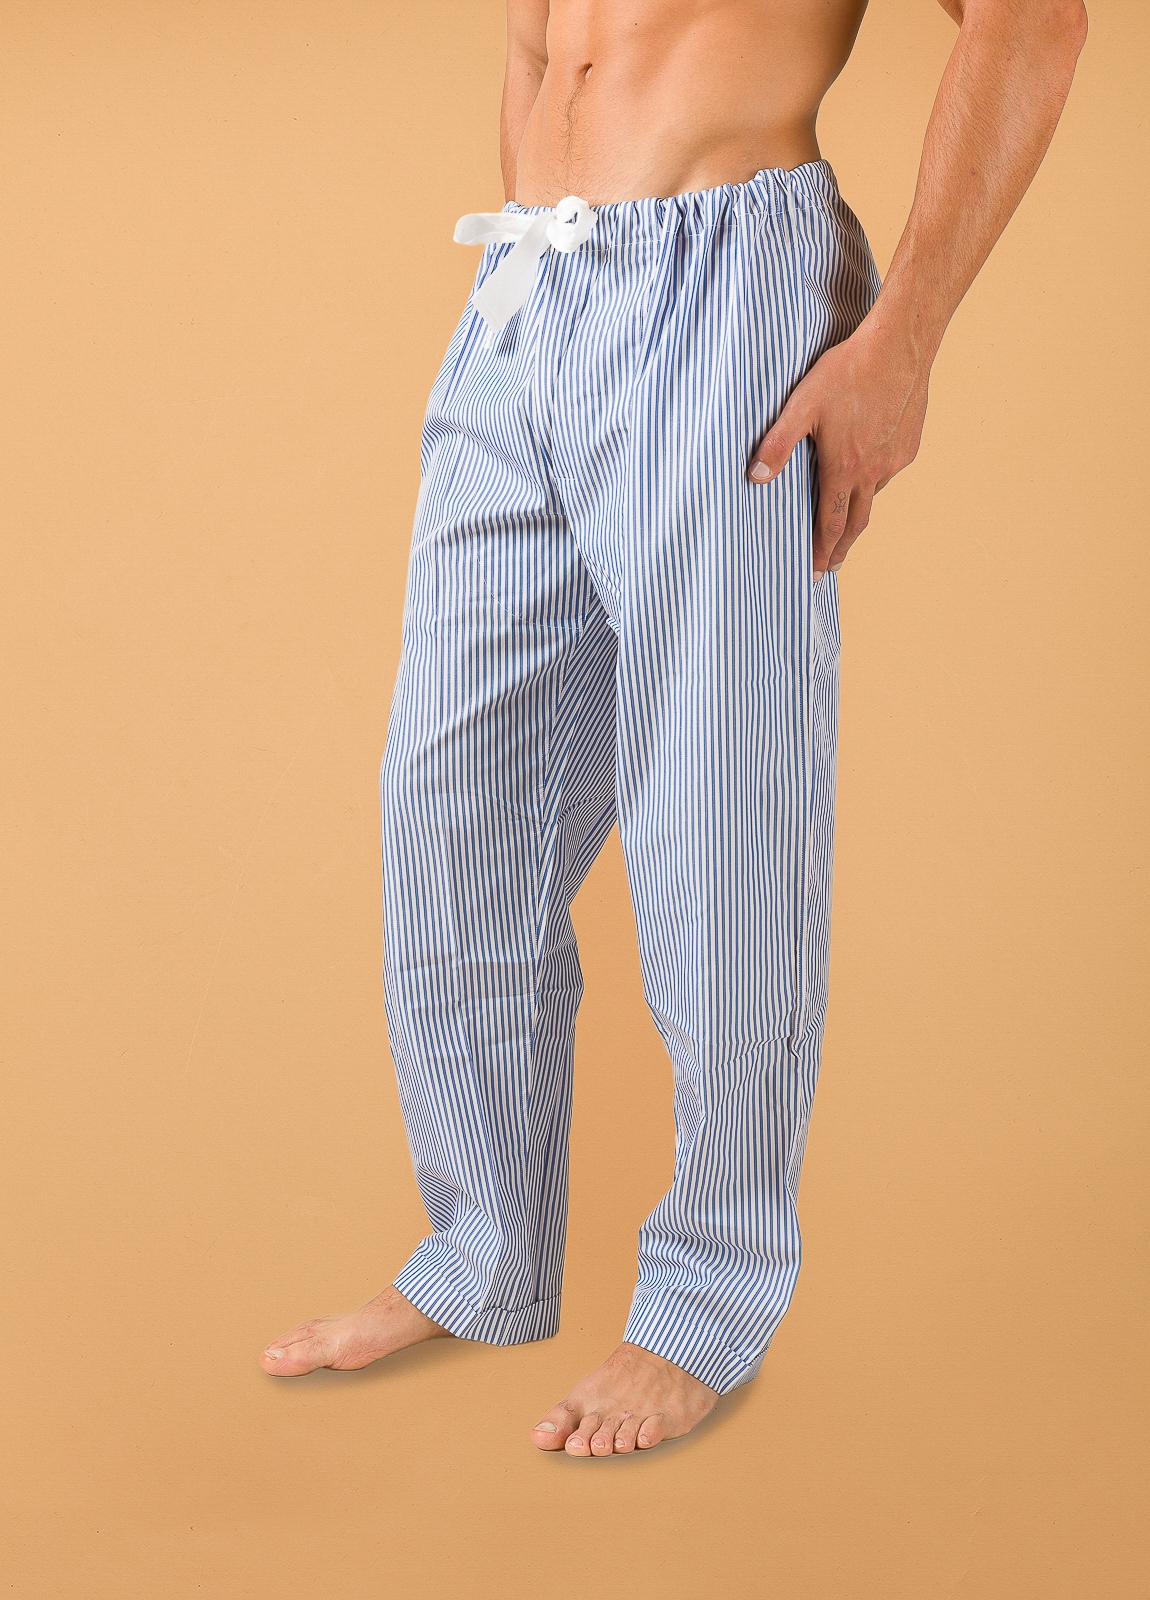 Pantalón largo de Pijama FUREST COLECCIÓN rayas azul con funda incluida - Ítem1